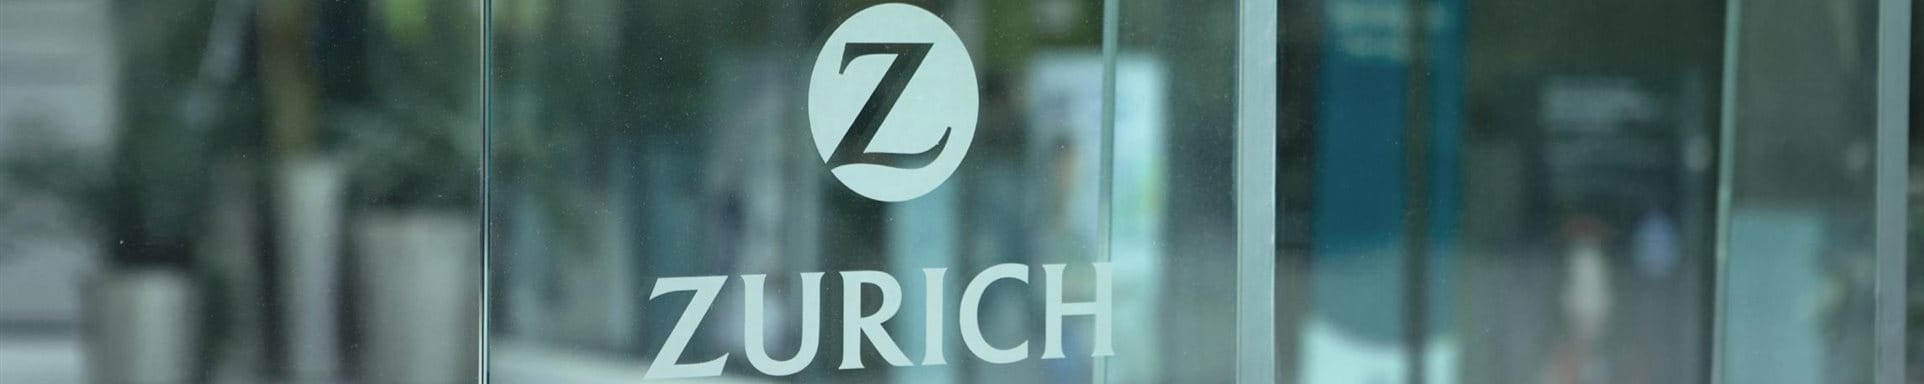 Ein Fenster mit dem Logo der Zurich.